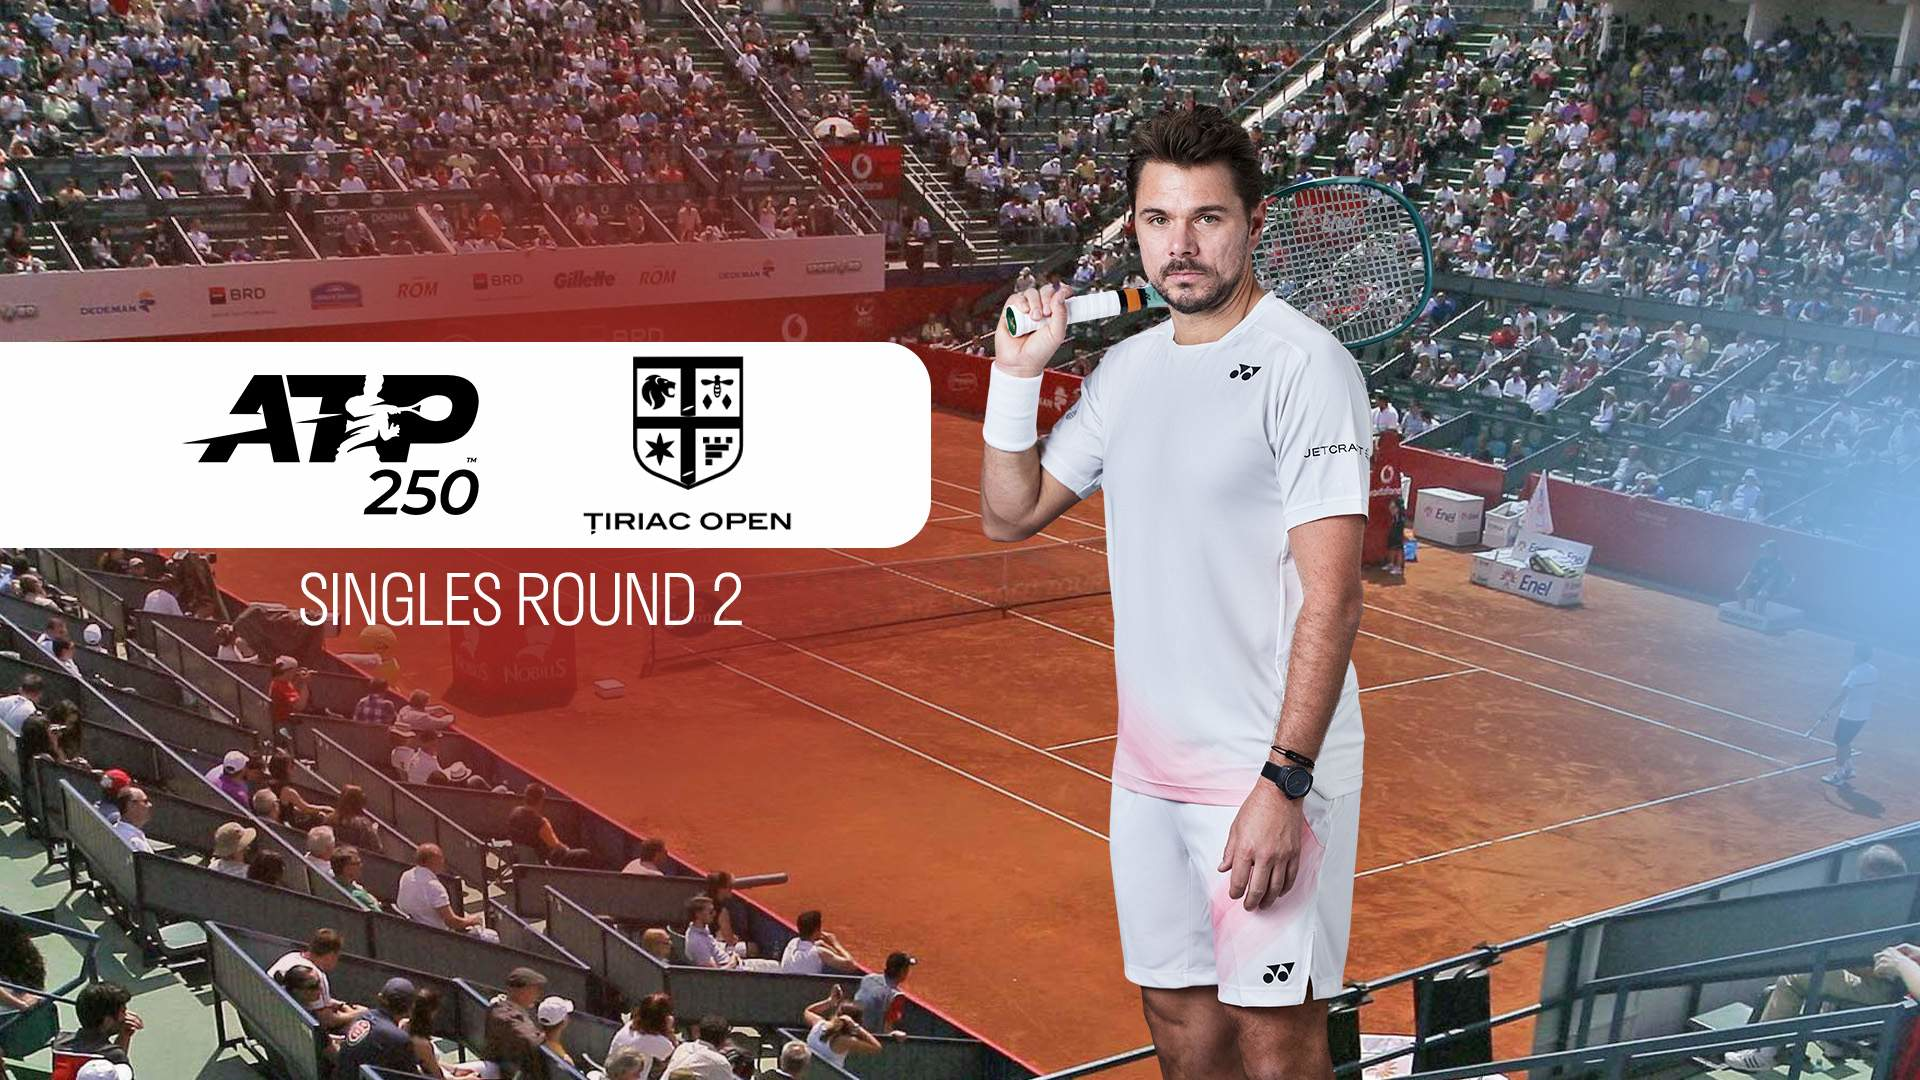 ATP 250 Bucharest. Singles Round 2